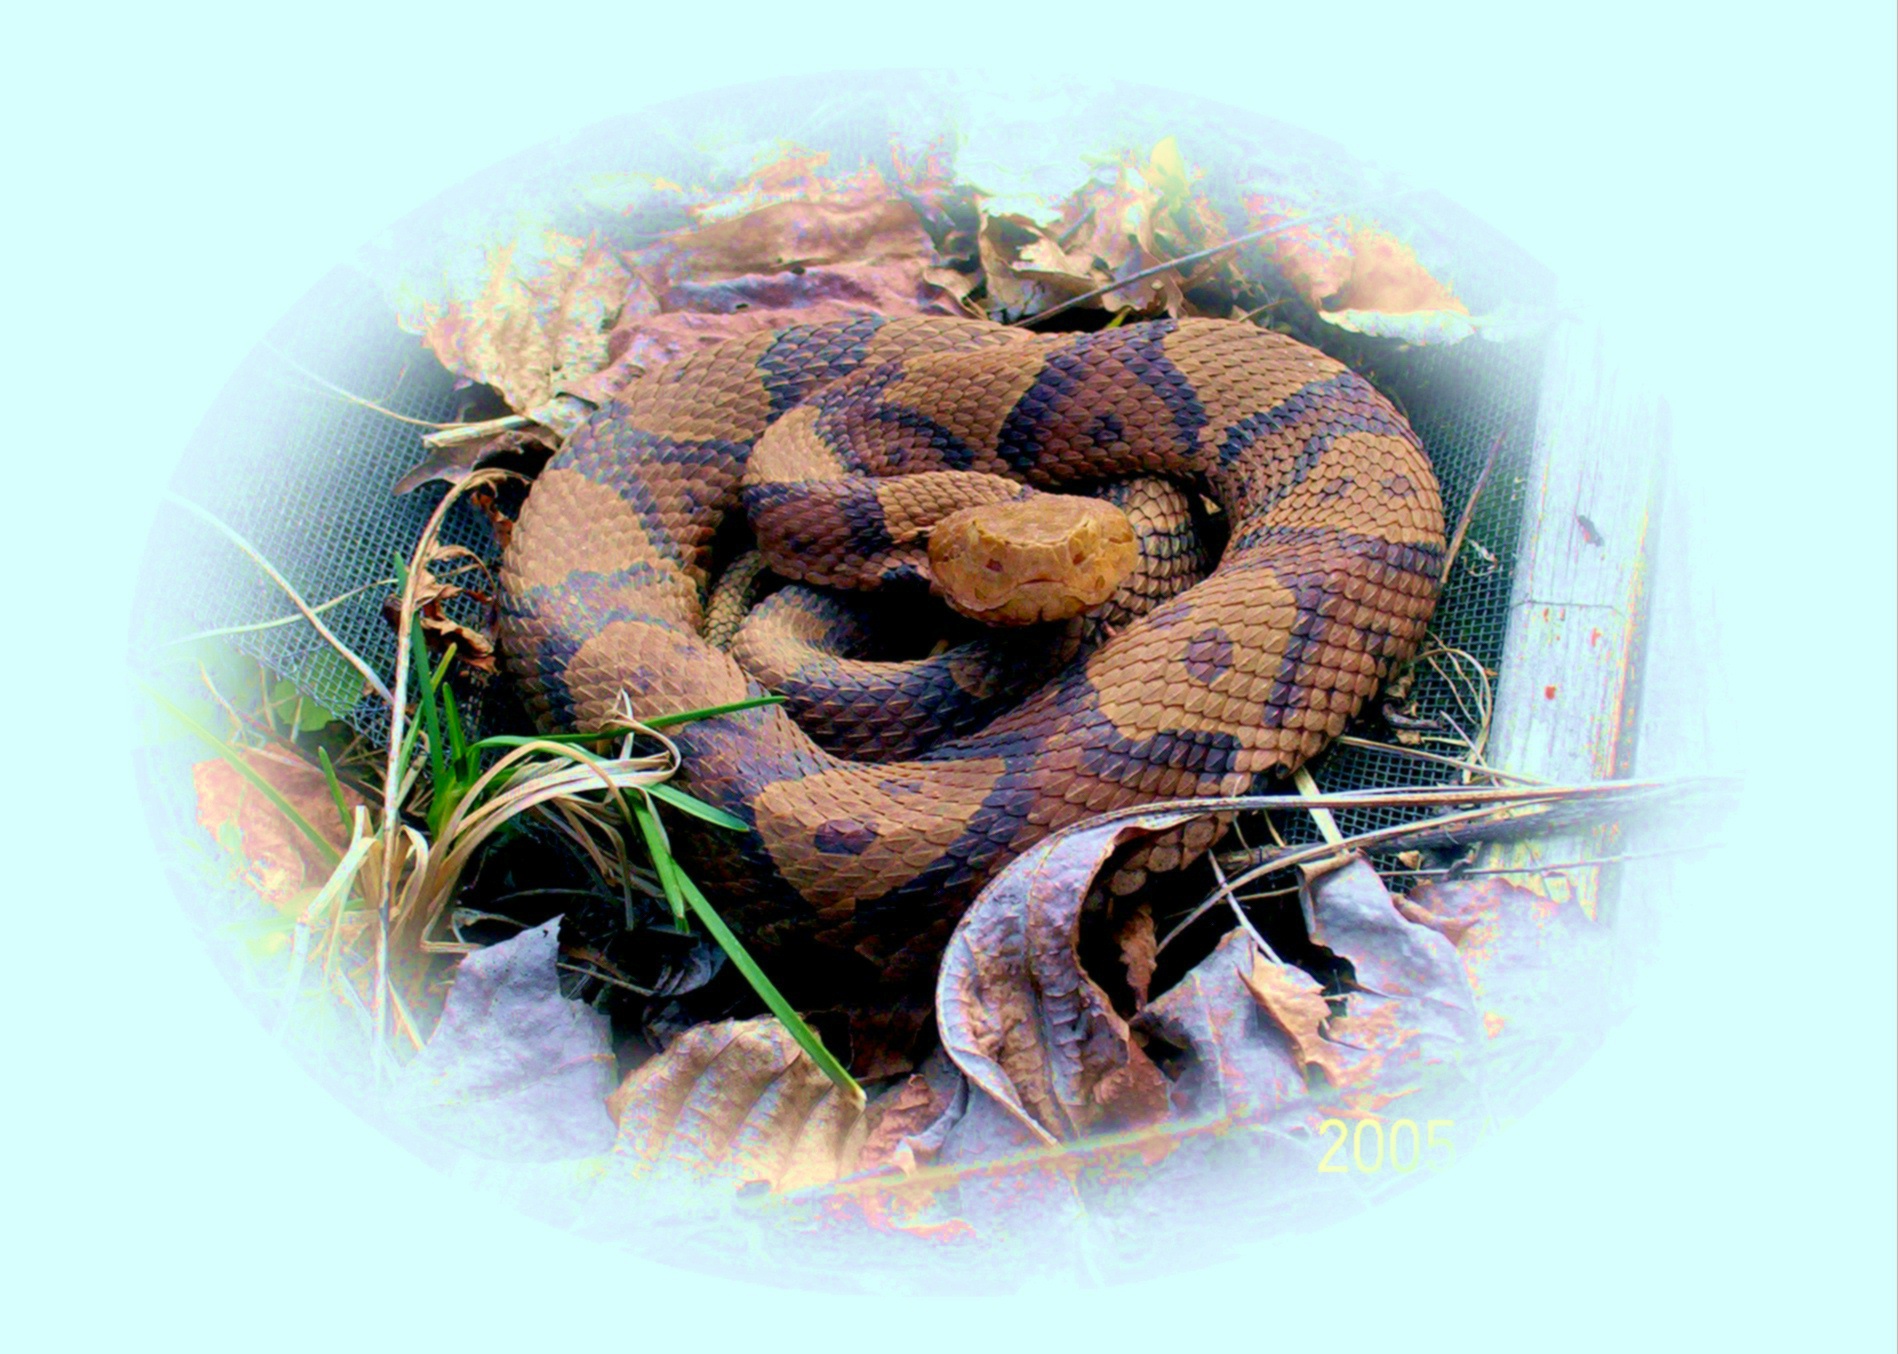 jeremys snakes 008.jpg [649 Kb]